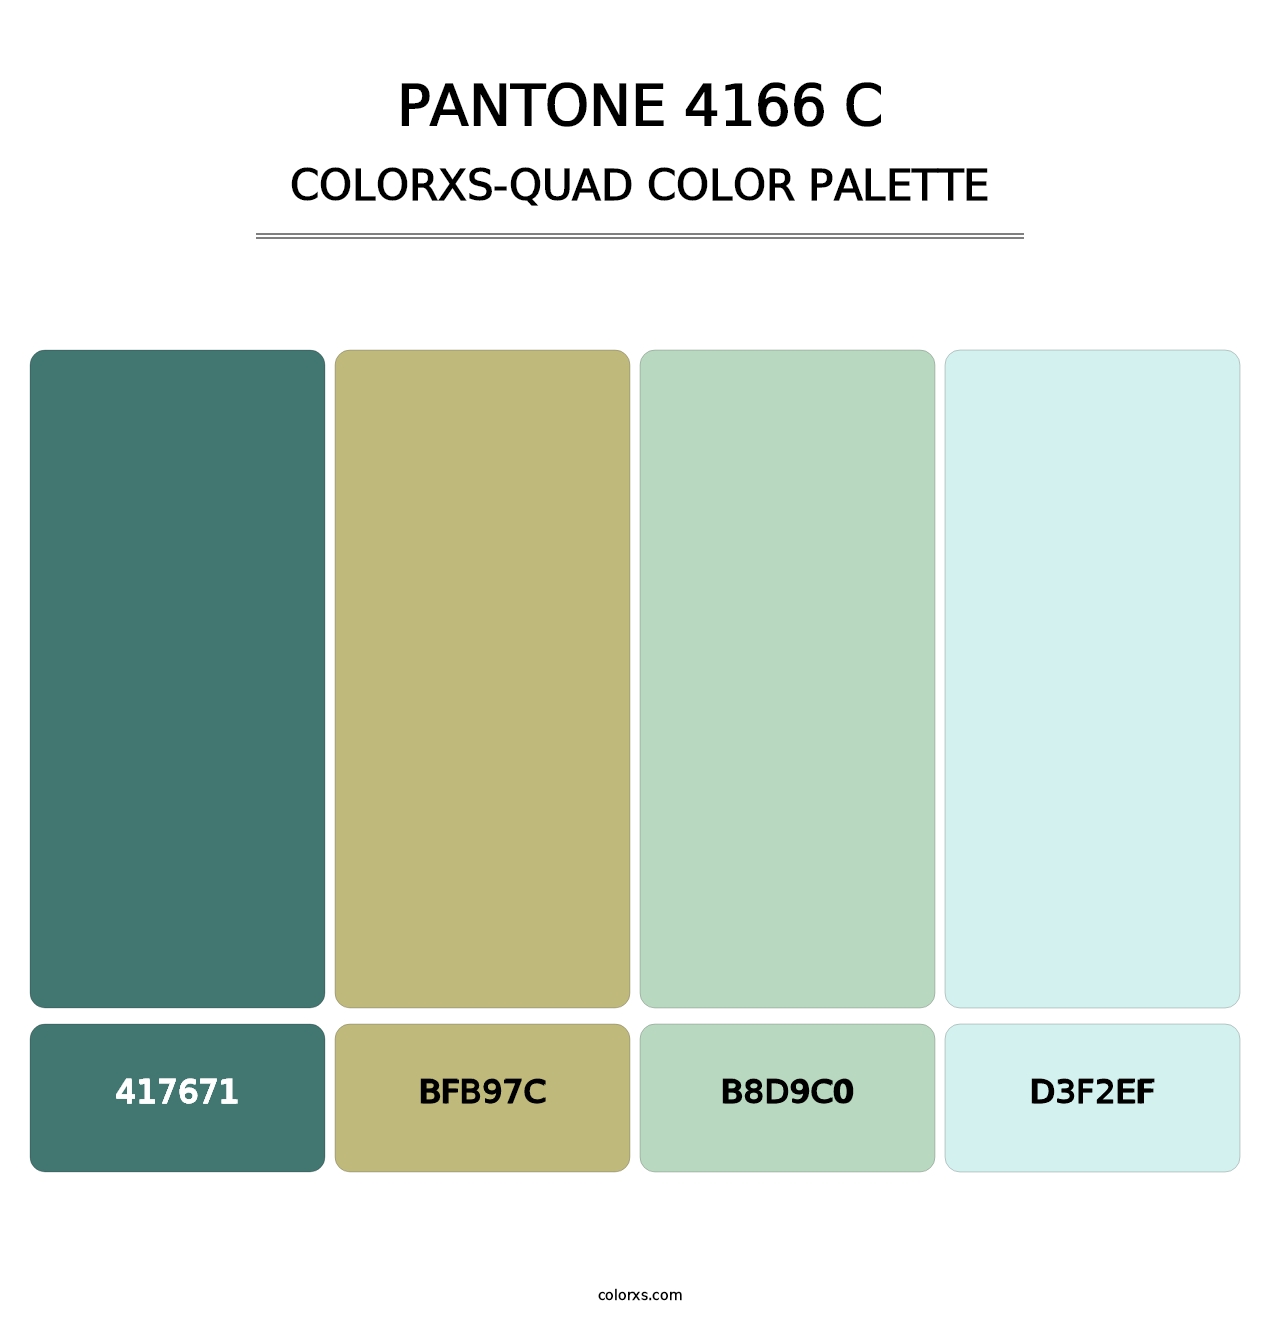 PANTONE 4166 C - Colorxs Quad Palette